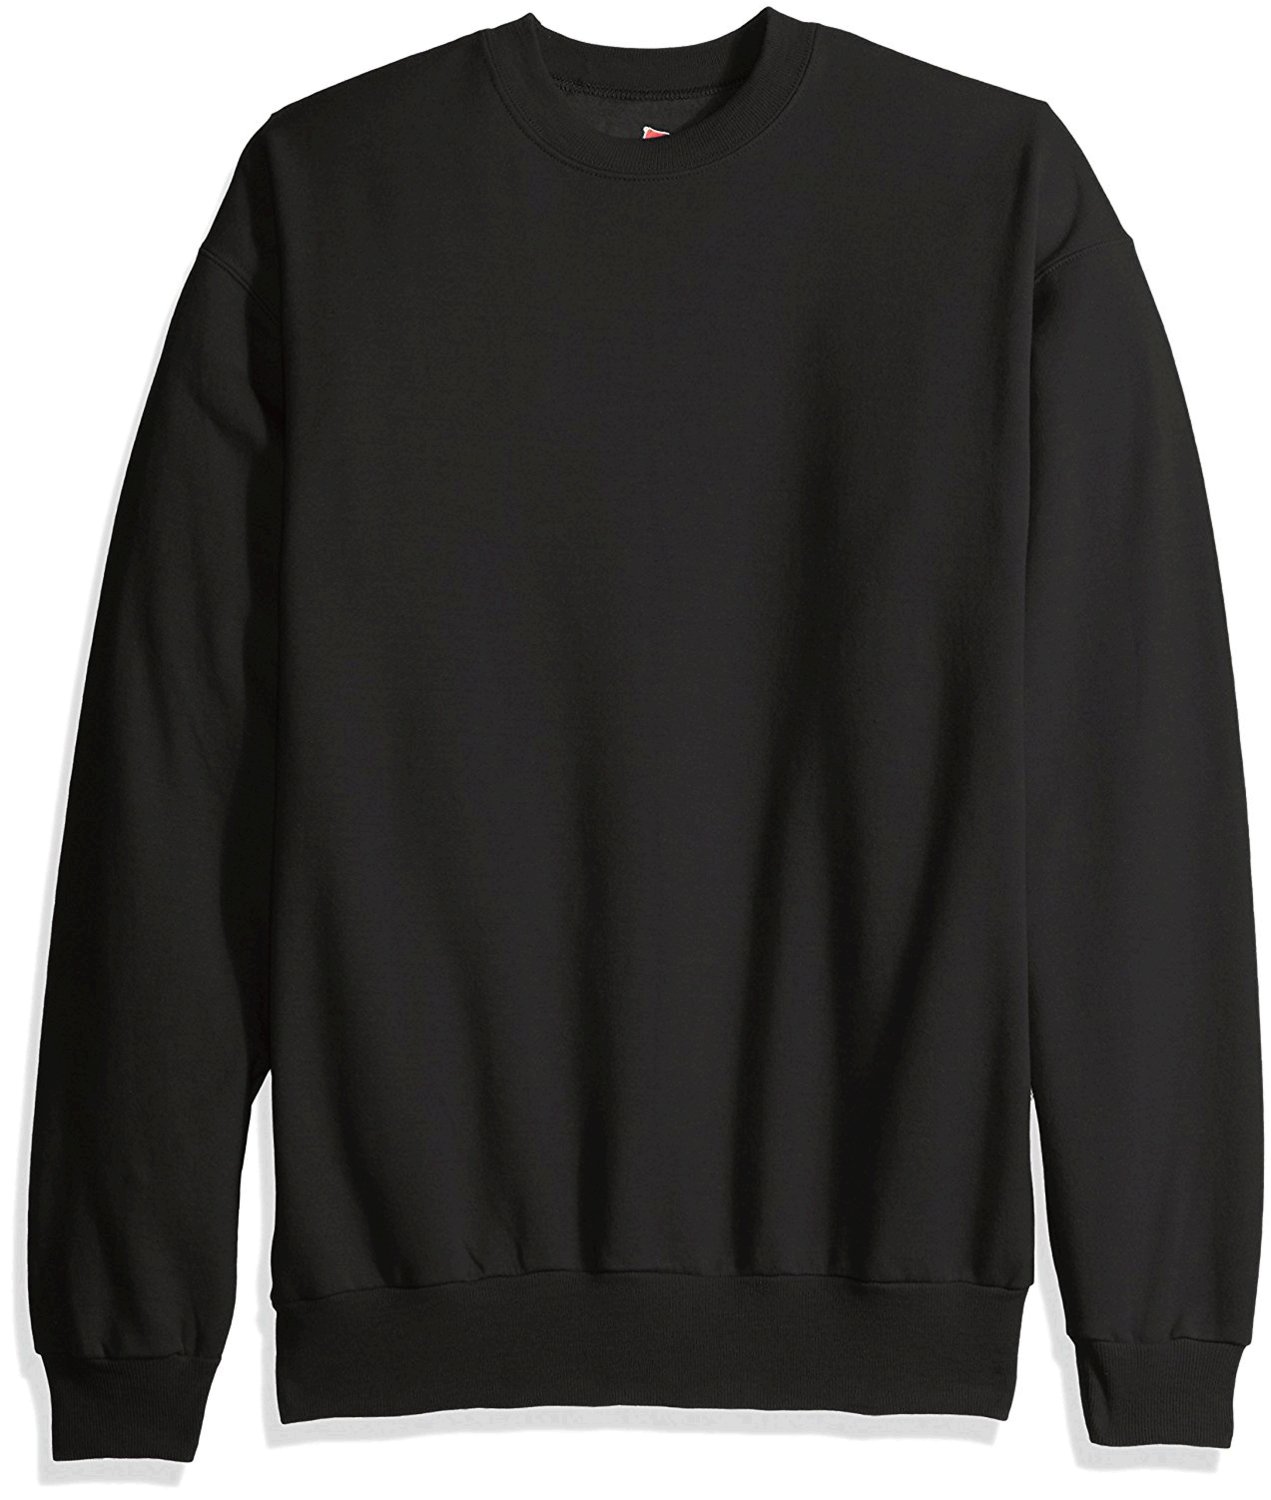 Hanes Men's Ecosmart Fleece Sweatshirt, Black, Medium, Black, Size ...